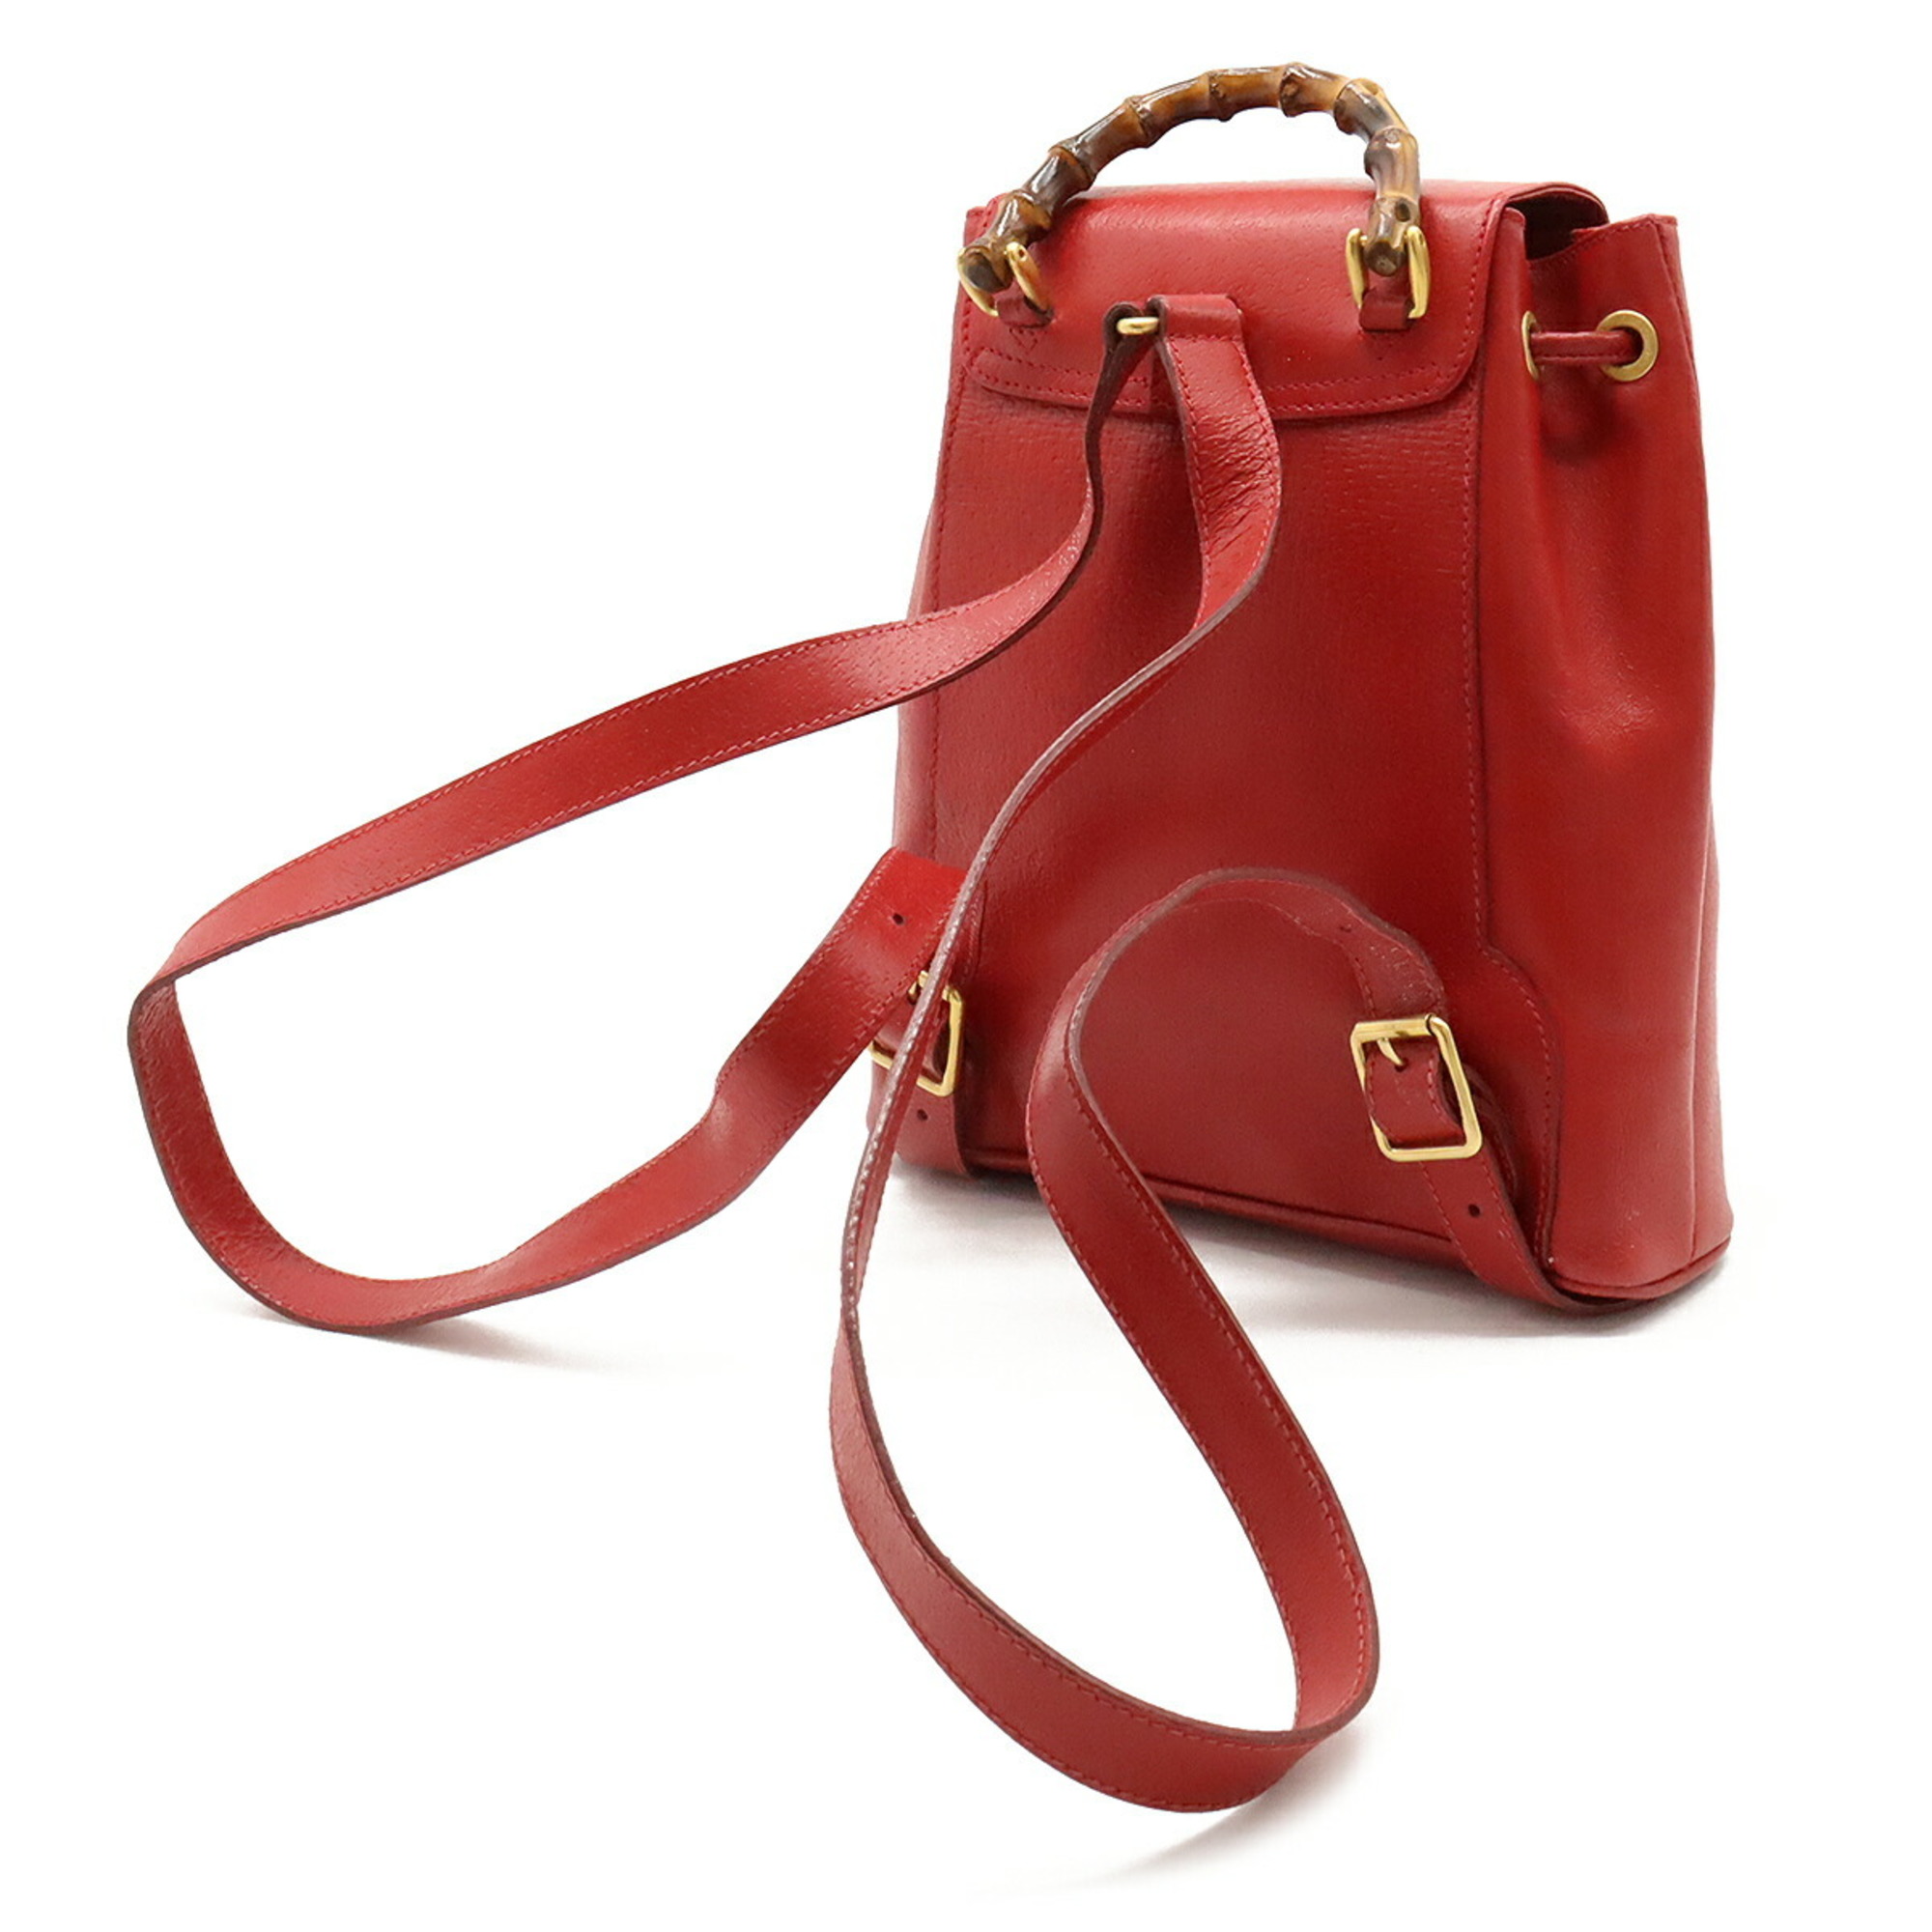 GUCCI Bamboo Rucksack Backpack Shoulder Bag Leather Red 003.1705.0030